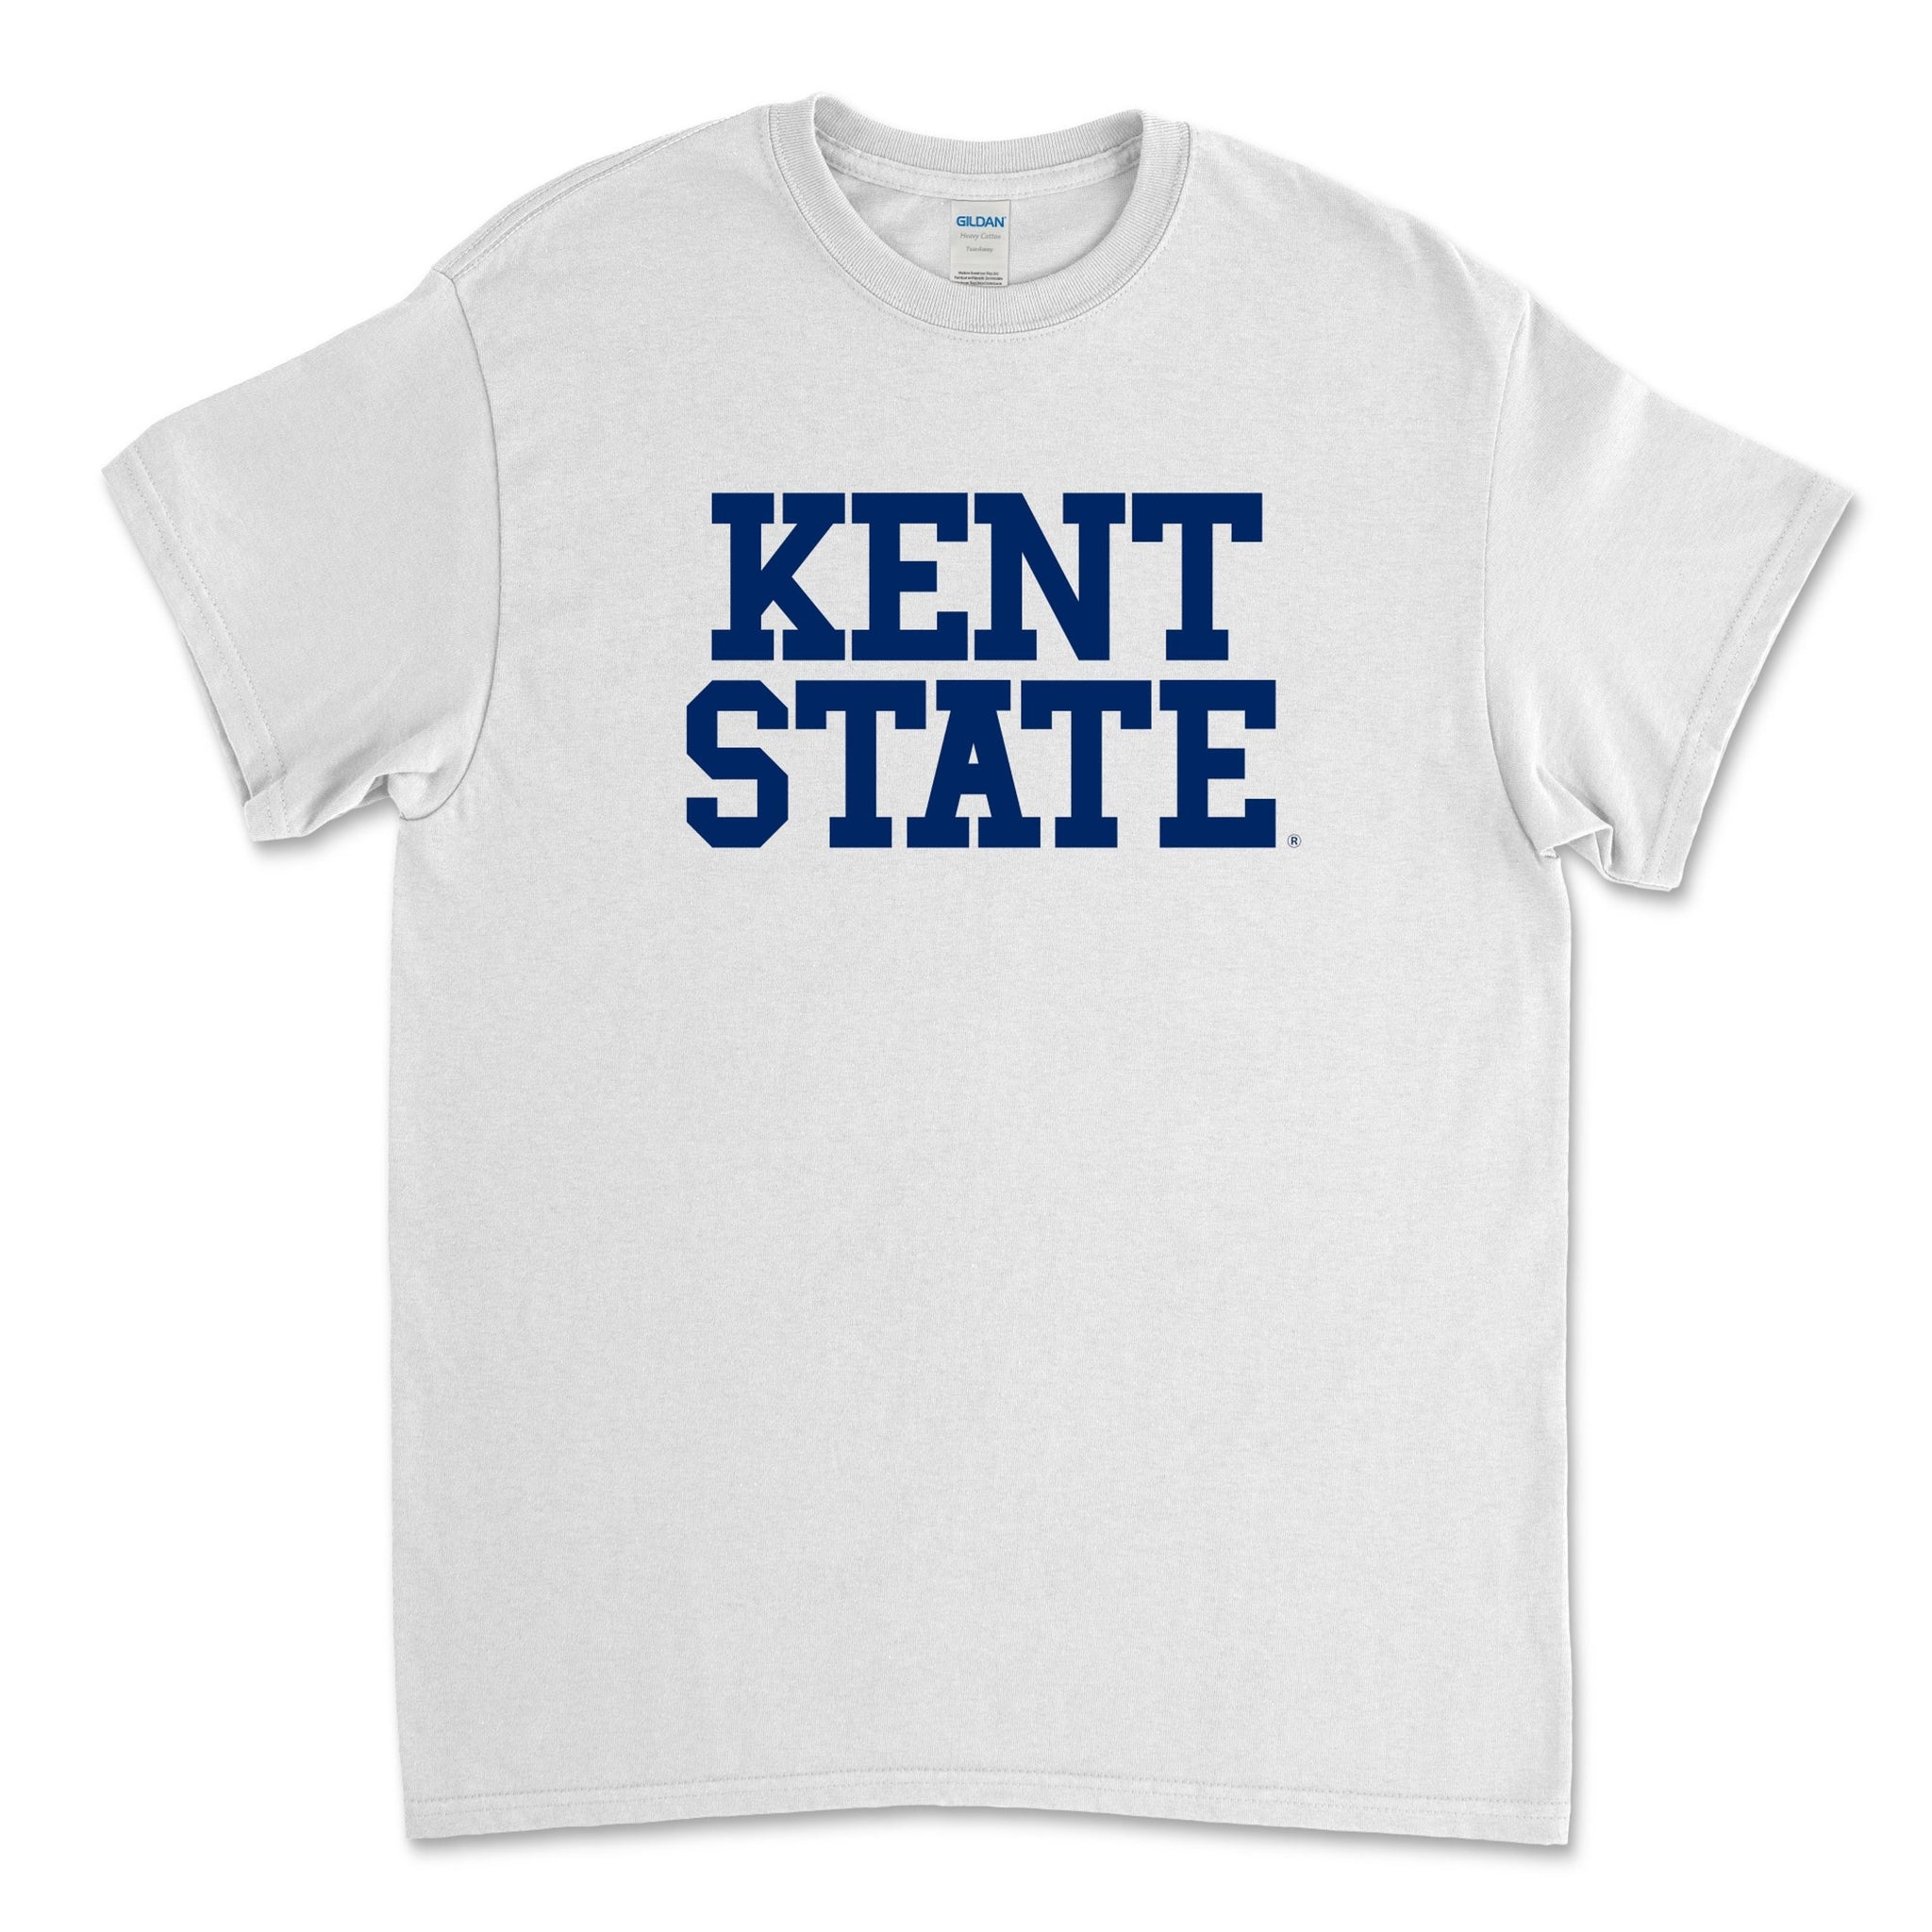 Kent State White Block T-Shirt